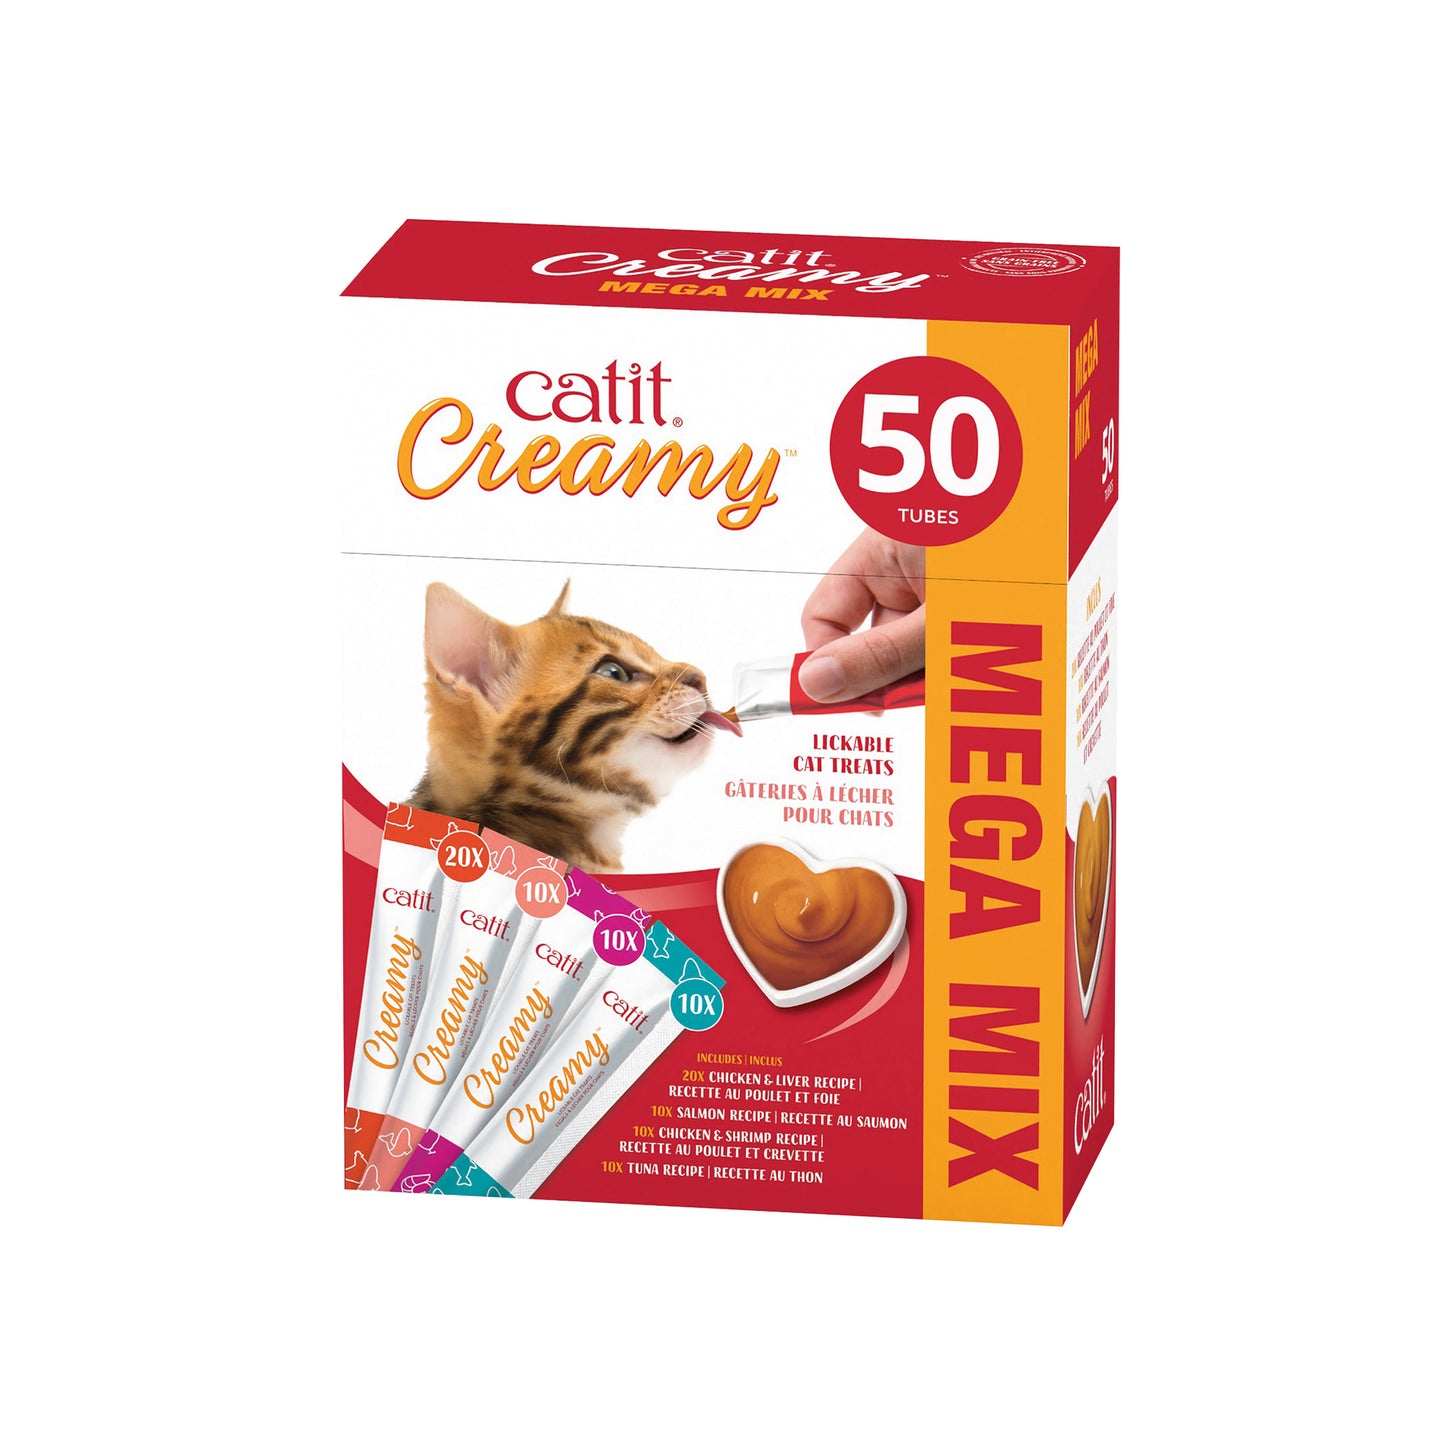 CatIt Creamy Lickable Treats Assorted 50 Pack Cat Treats 50 Pack | PetMax Canada